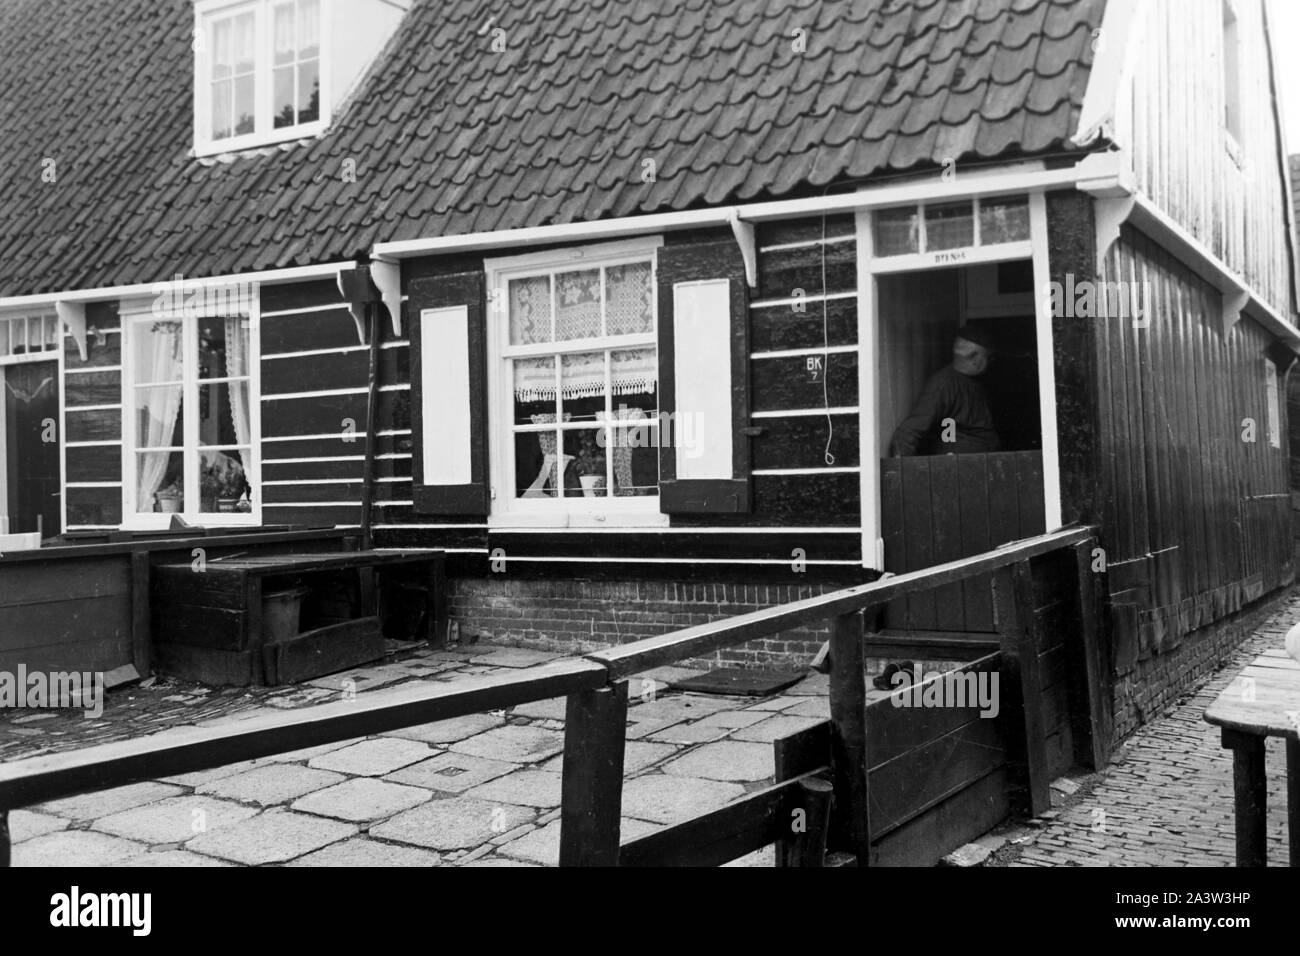 Vorgarten eines Hauses im Dorf auf der Insel Marken, Niederlande 1971. Giardino frontale di una casa del villaggio sull isola di Marken, Paesi Bassi 1971. Foto Stock